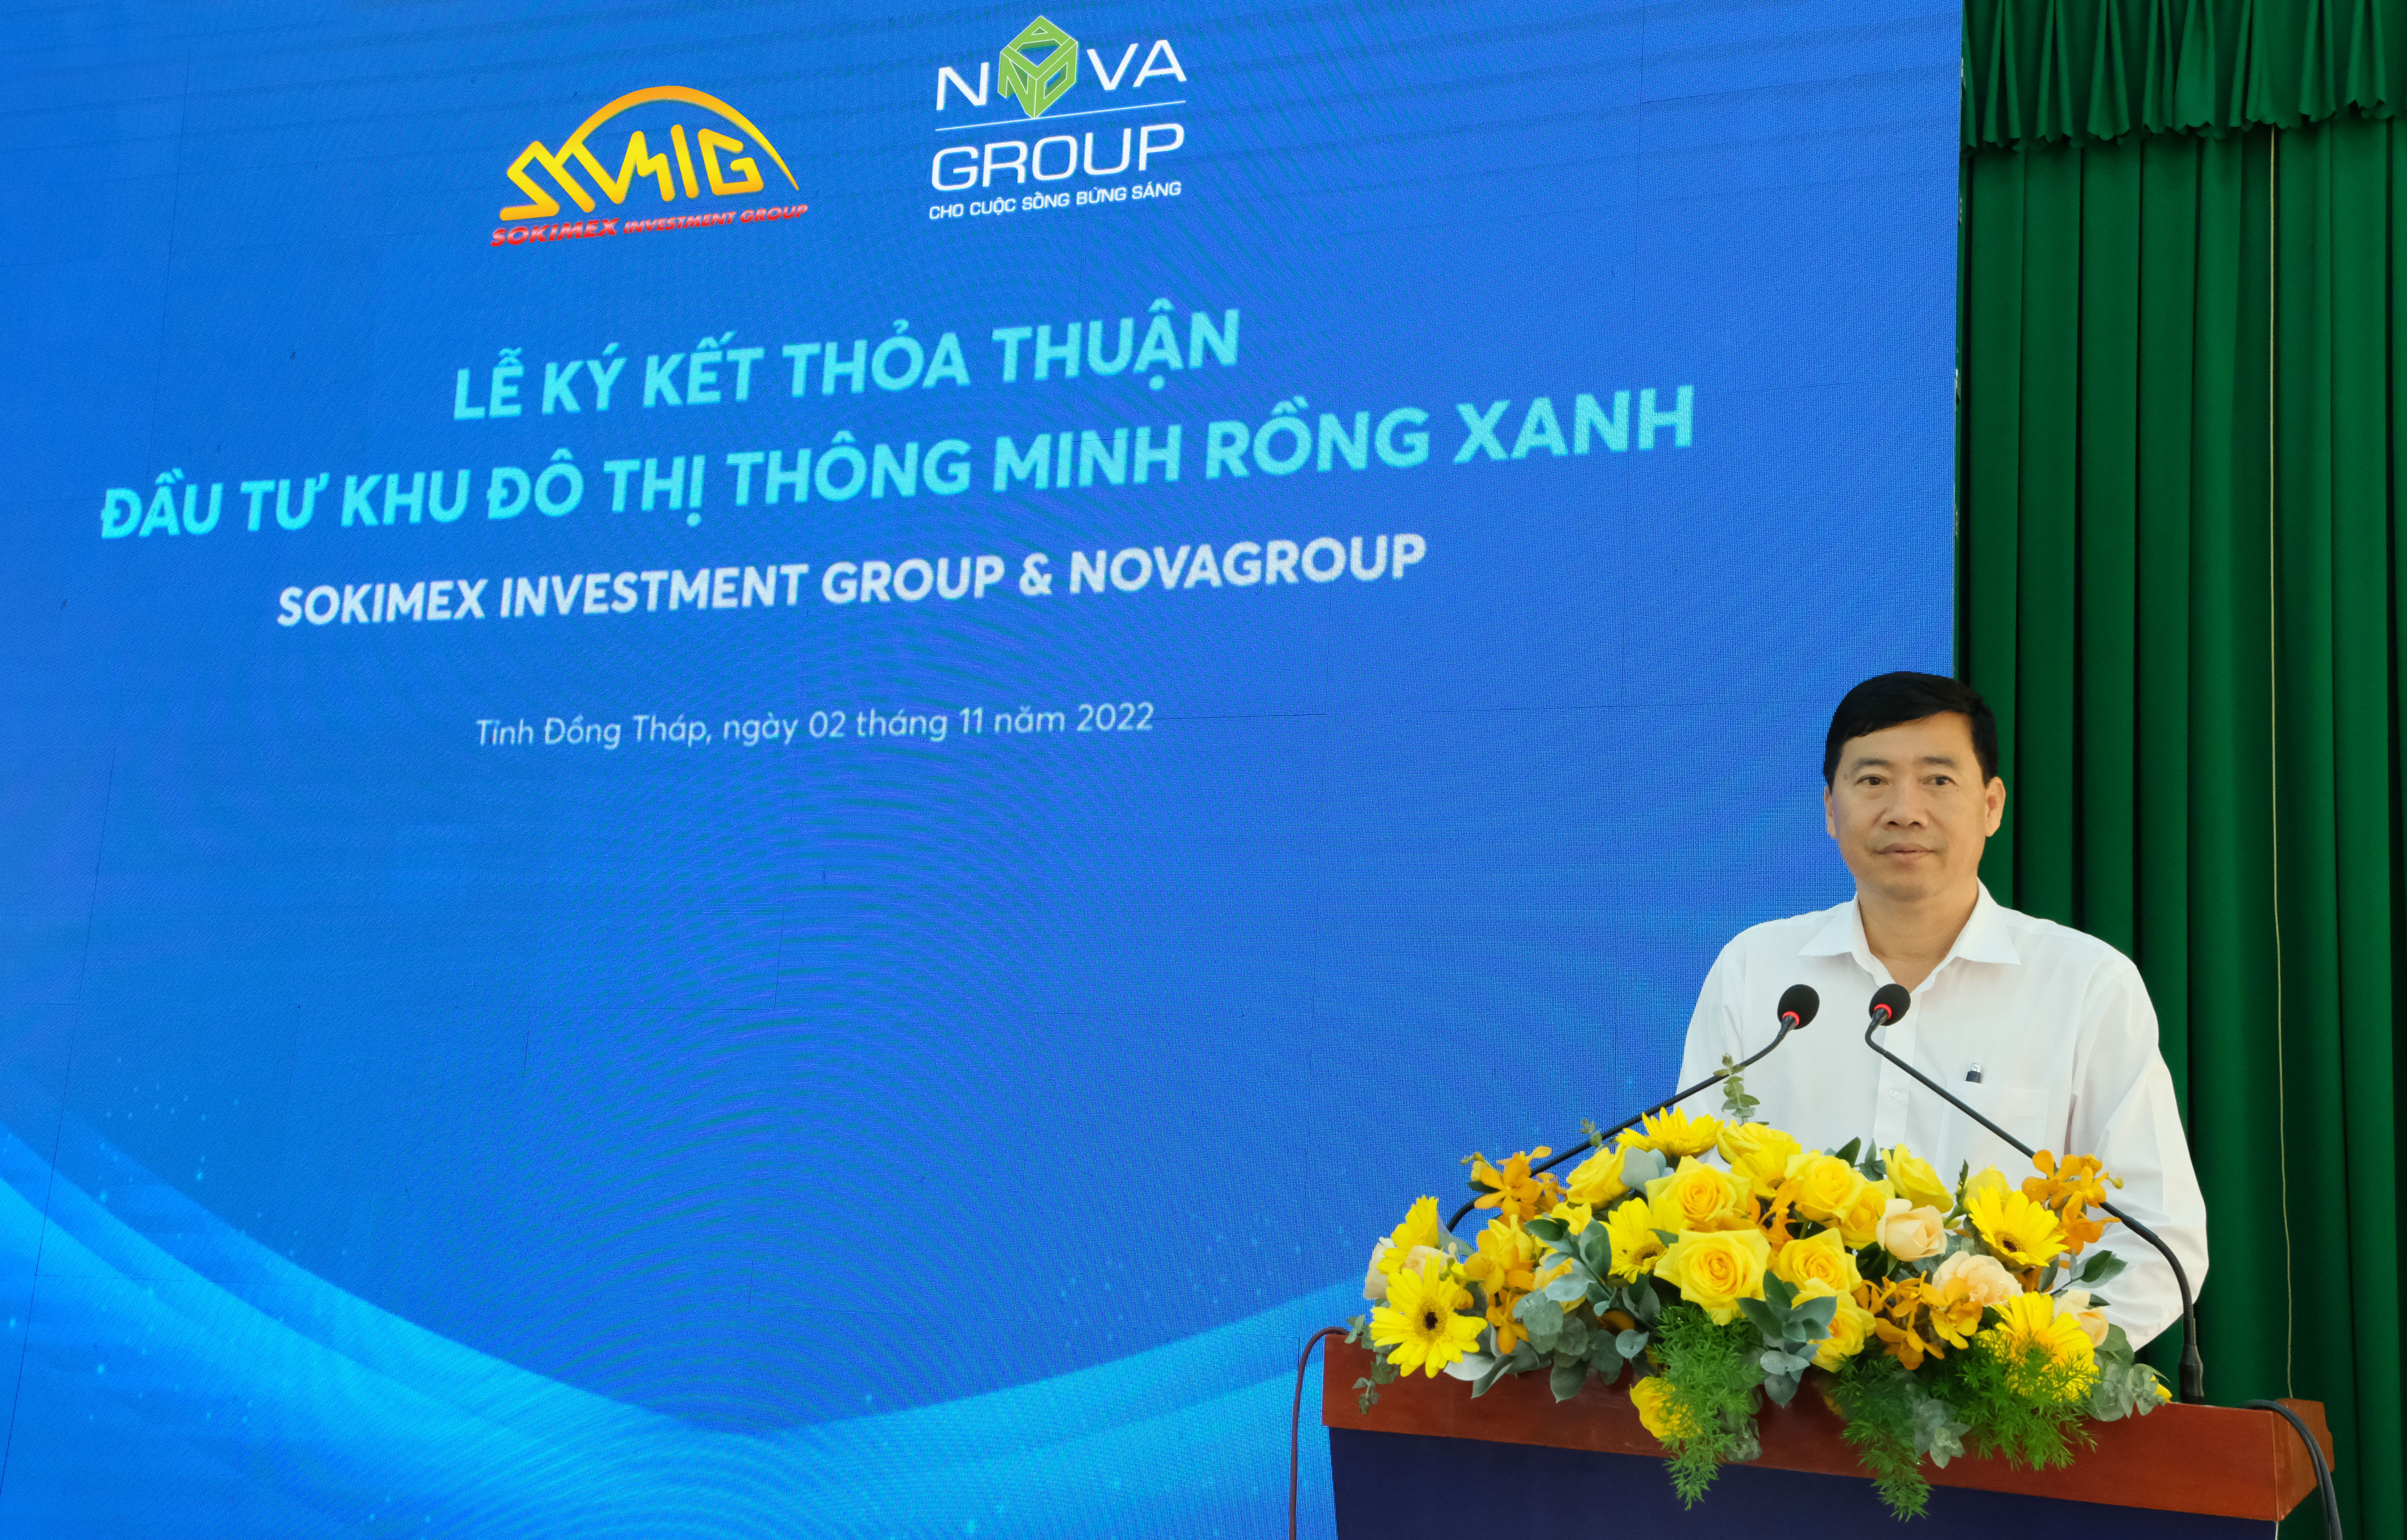 Ông Phạm Thiện Nghĩa, Phó Bí thư Tỉnh ủy, Chủ tịch UBND tỉnh Đồng Tháp chúc mừng sự hợp tác của hai Tập đoàn.